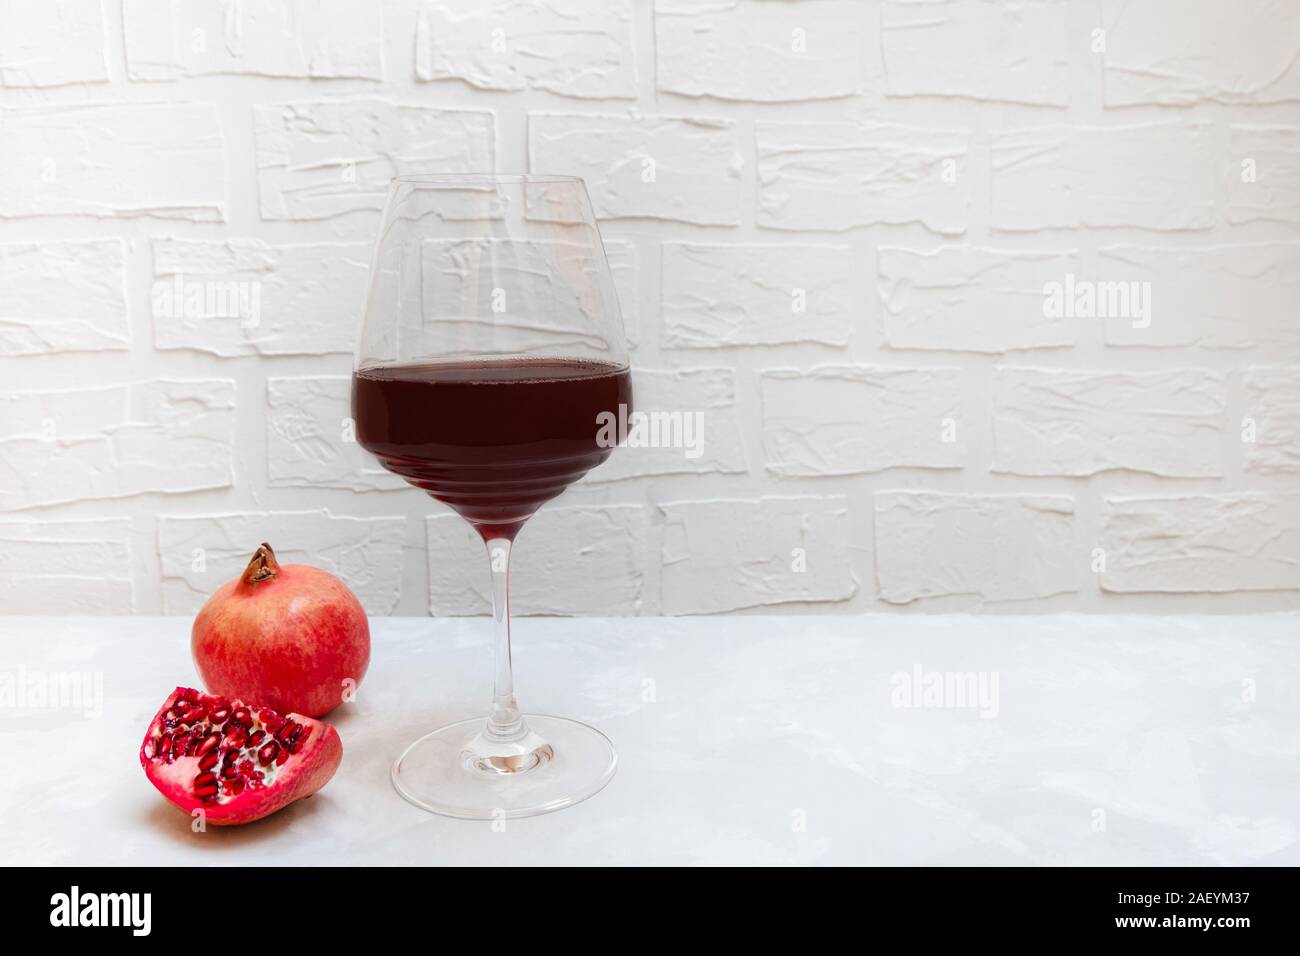 Melograno del vino in un bicchiere di vino su sfondo neutro Foto Stock